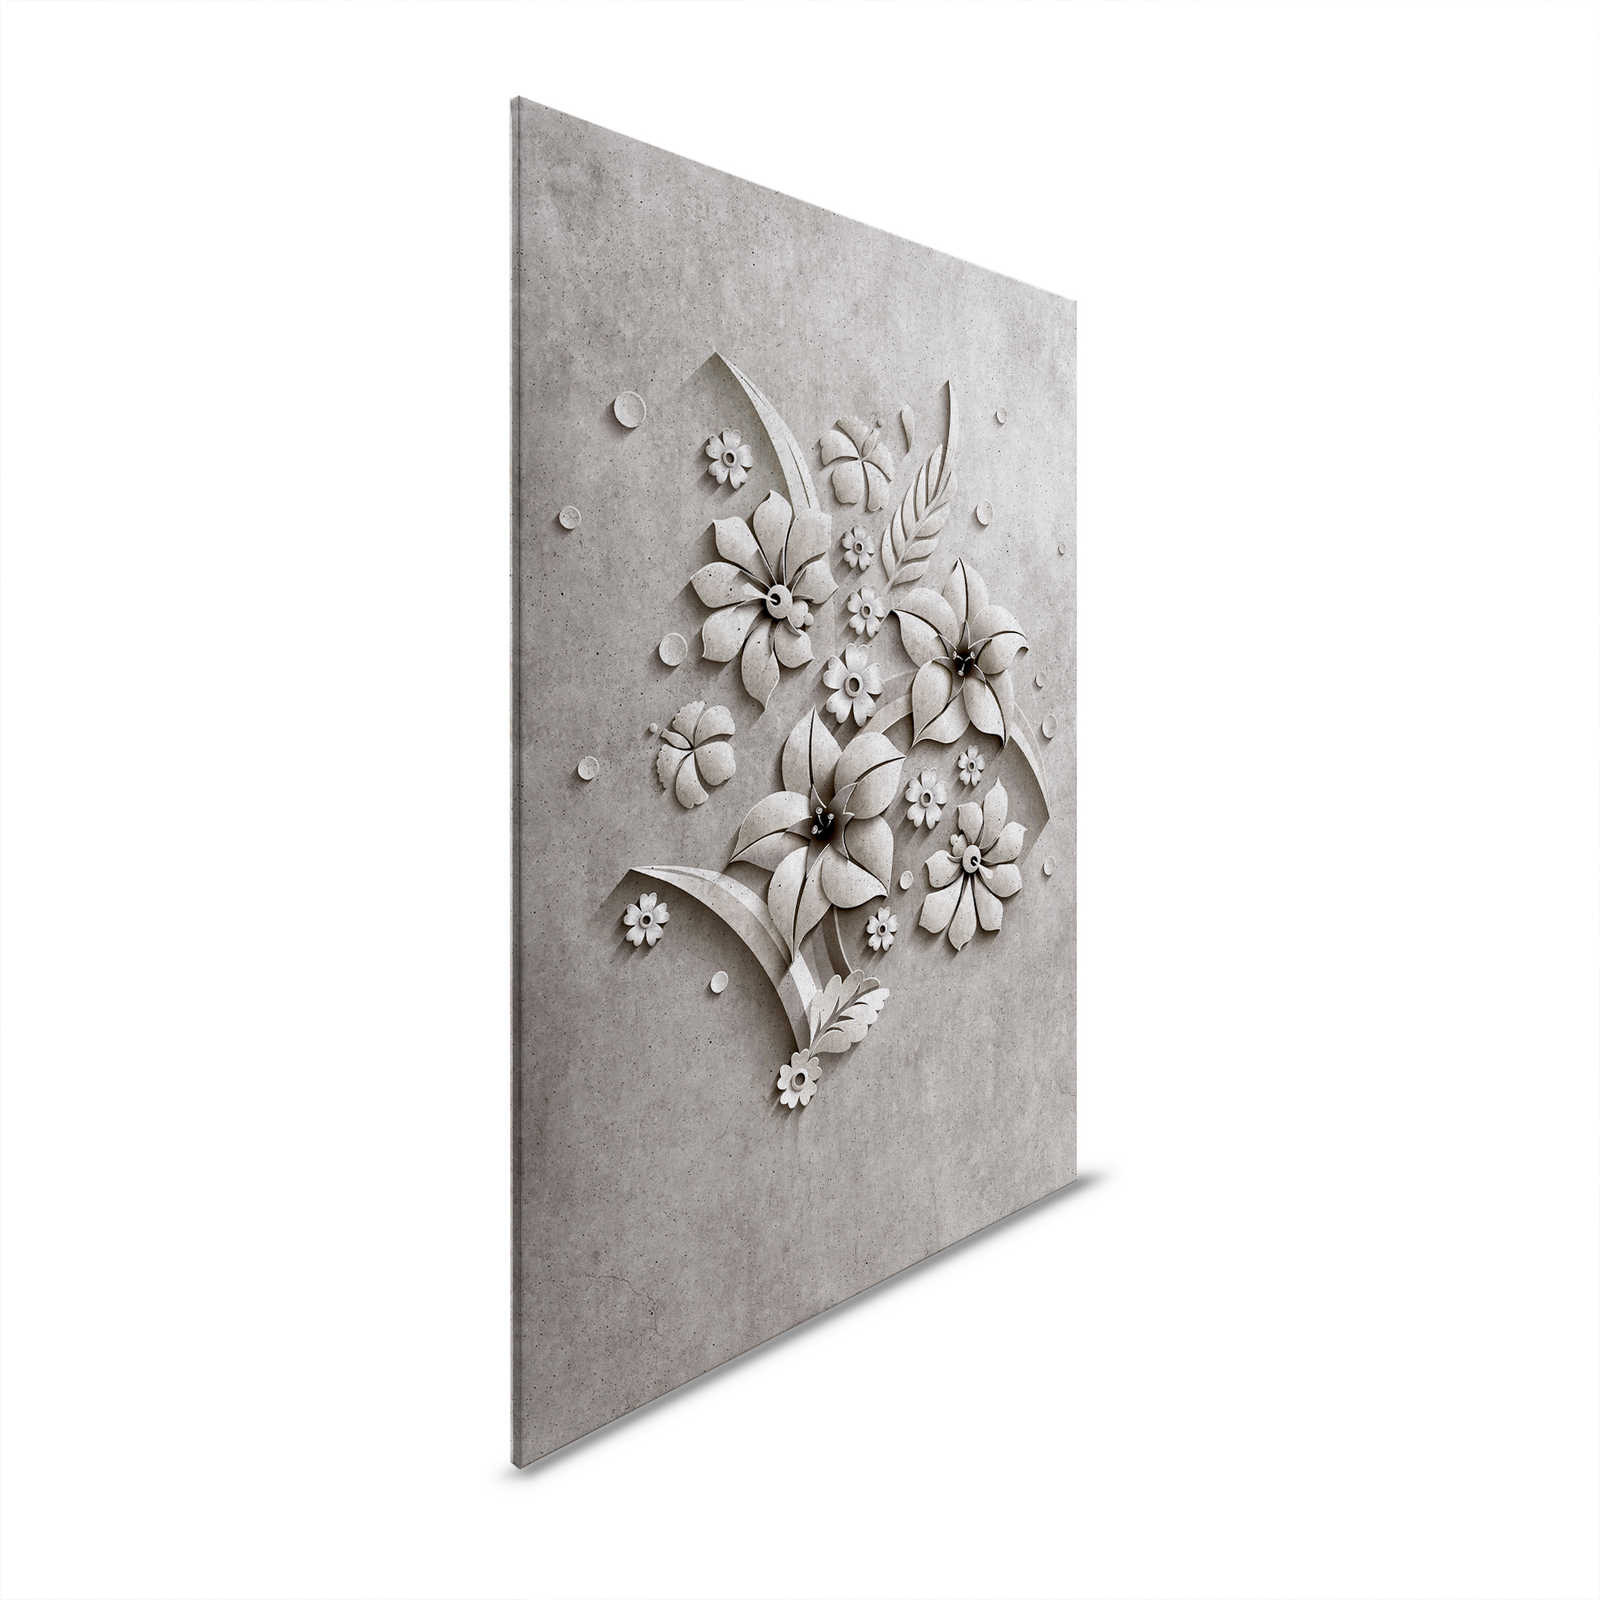 Rilievo 1 - Pittura su tela in struttura di cemento di un rilievo floreale - 1,20 m x 0,80 m
